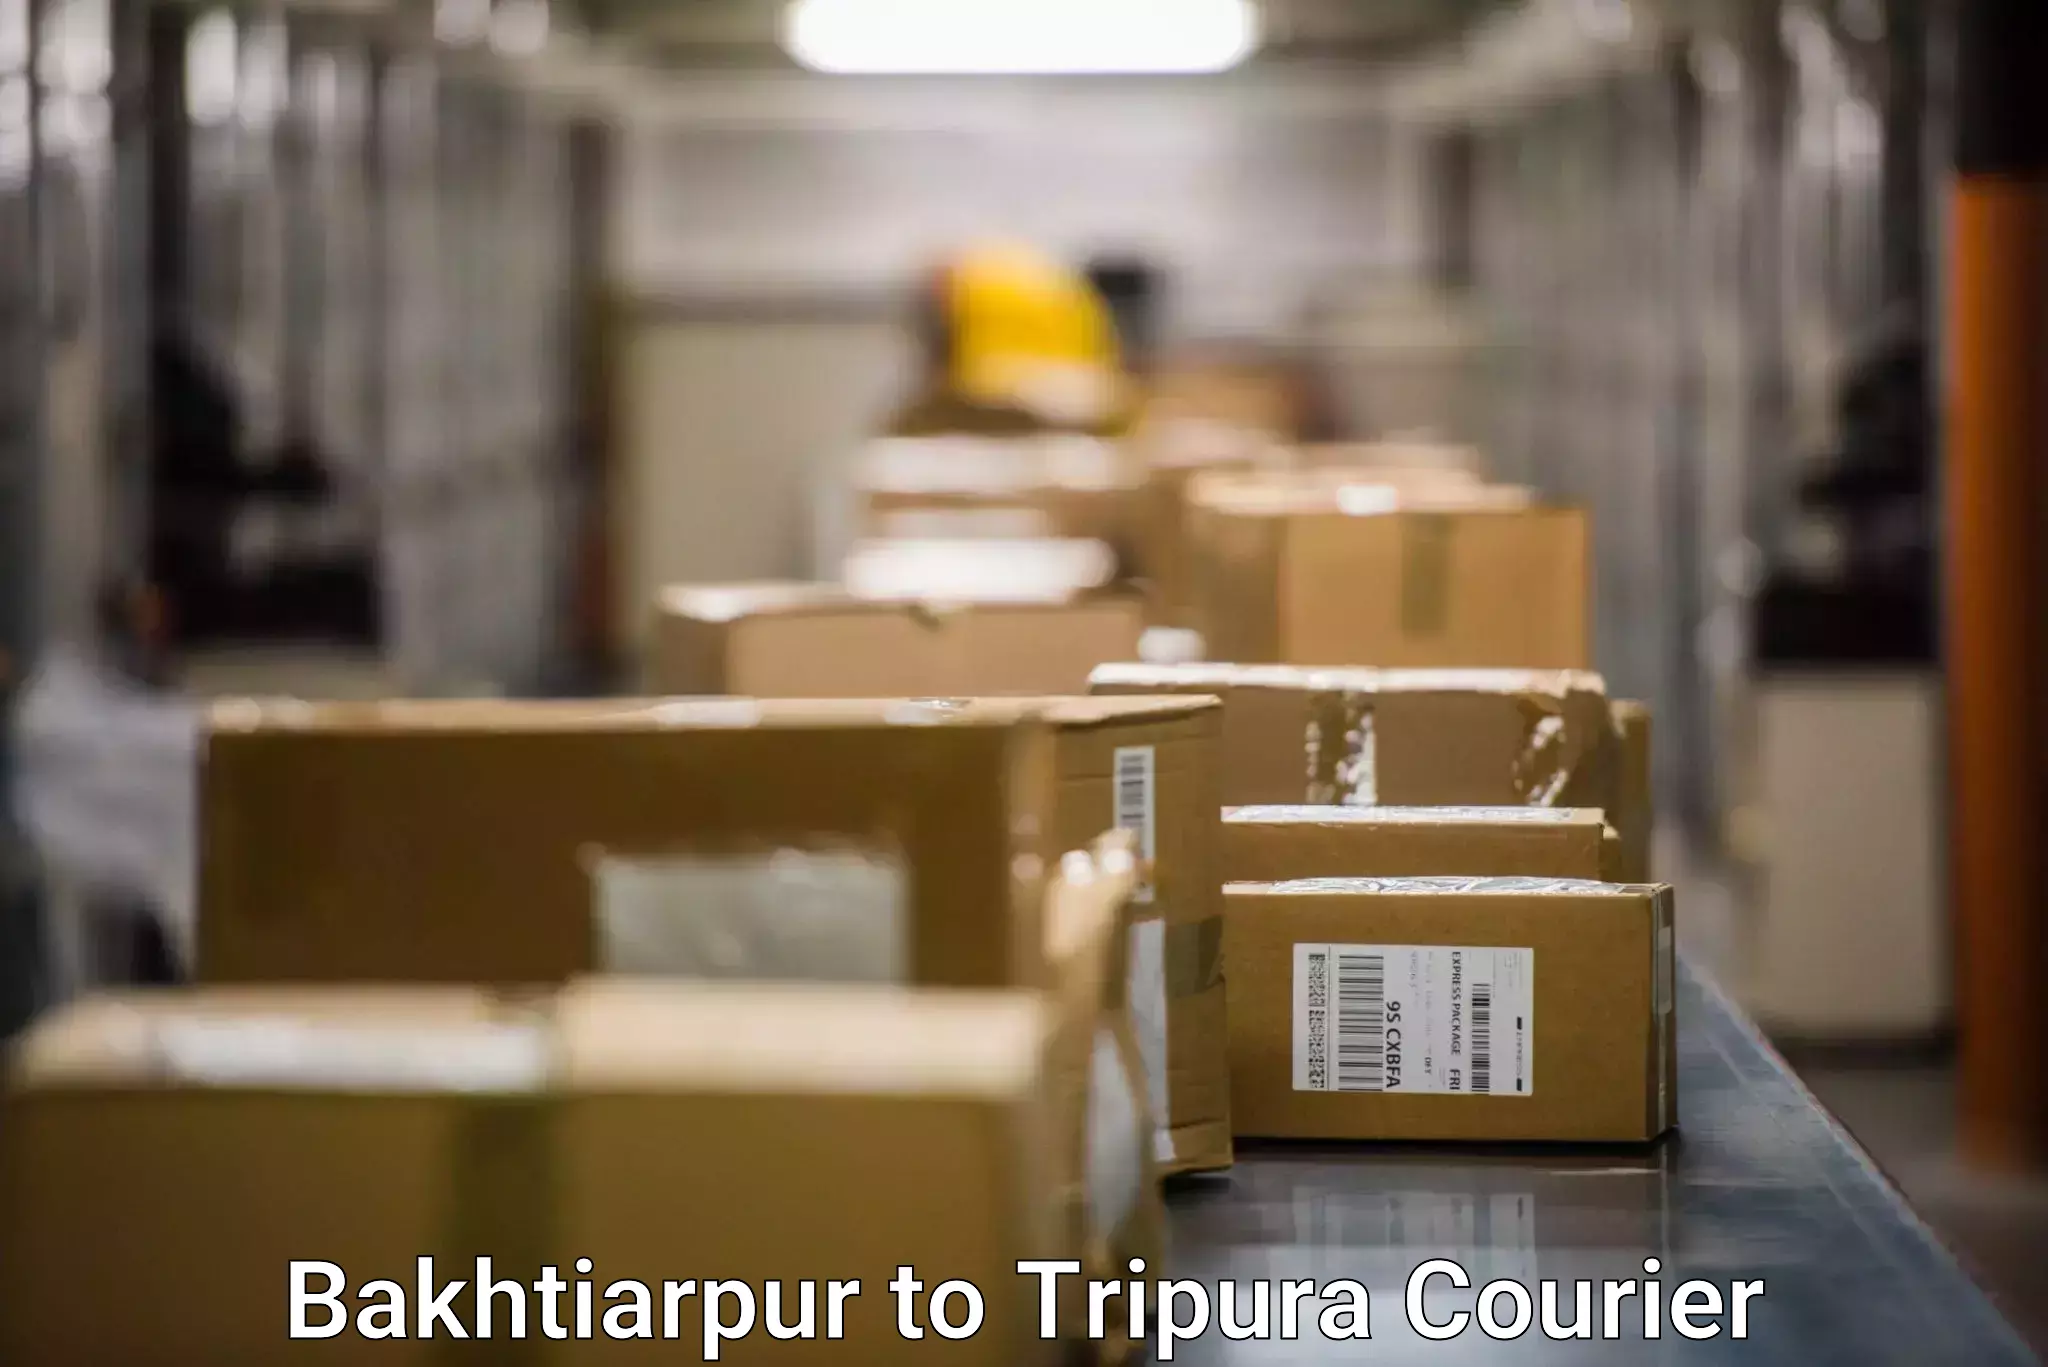 Courier rate comparison Bakhtiarpur to Manughat